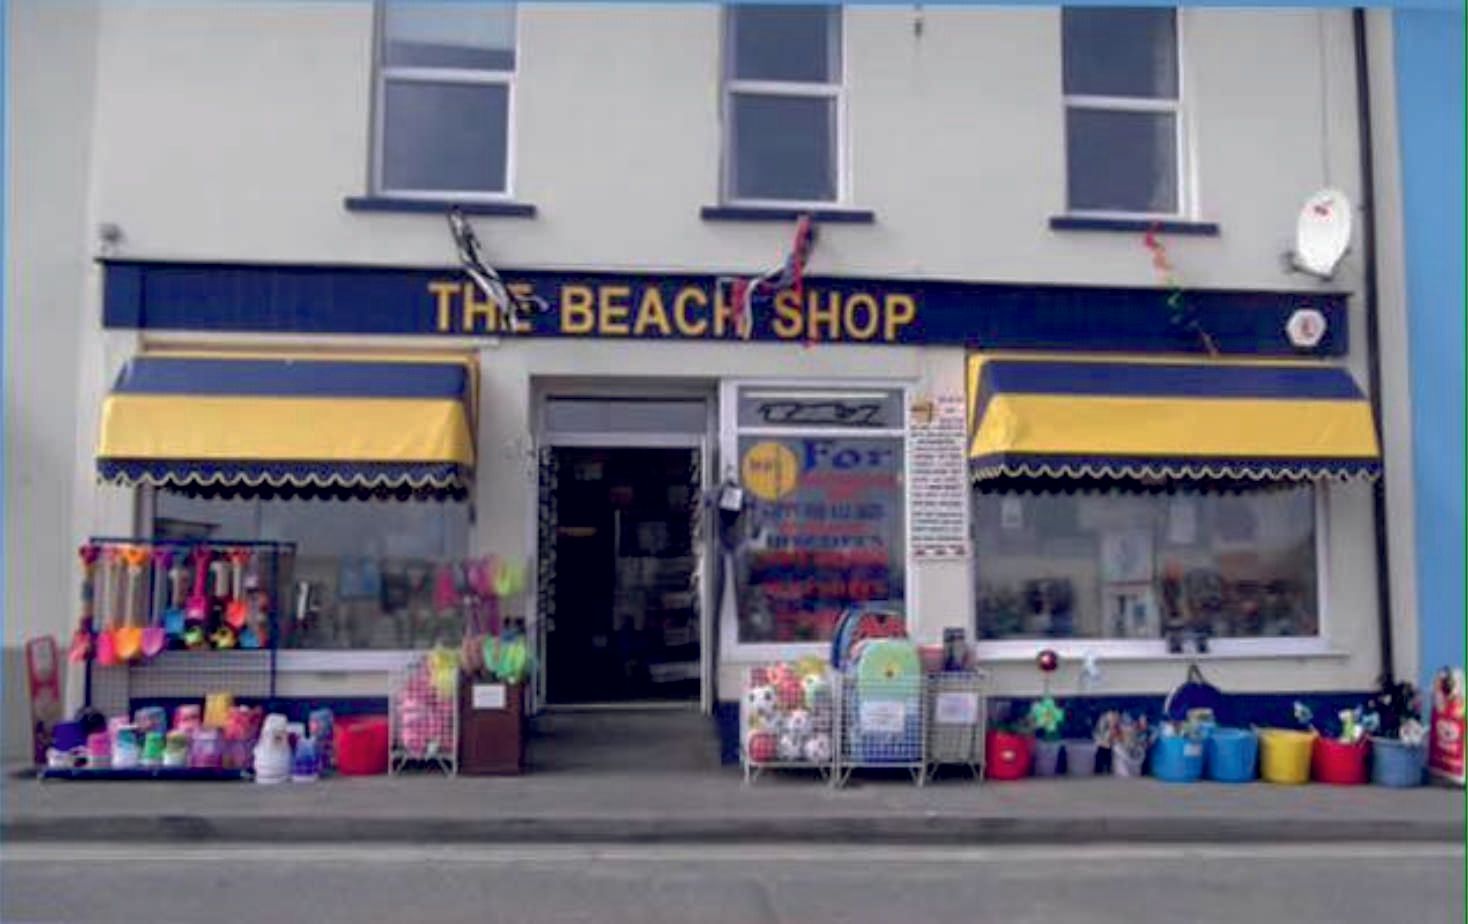 Westward Ho! Beach shop near the entrance to the beach